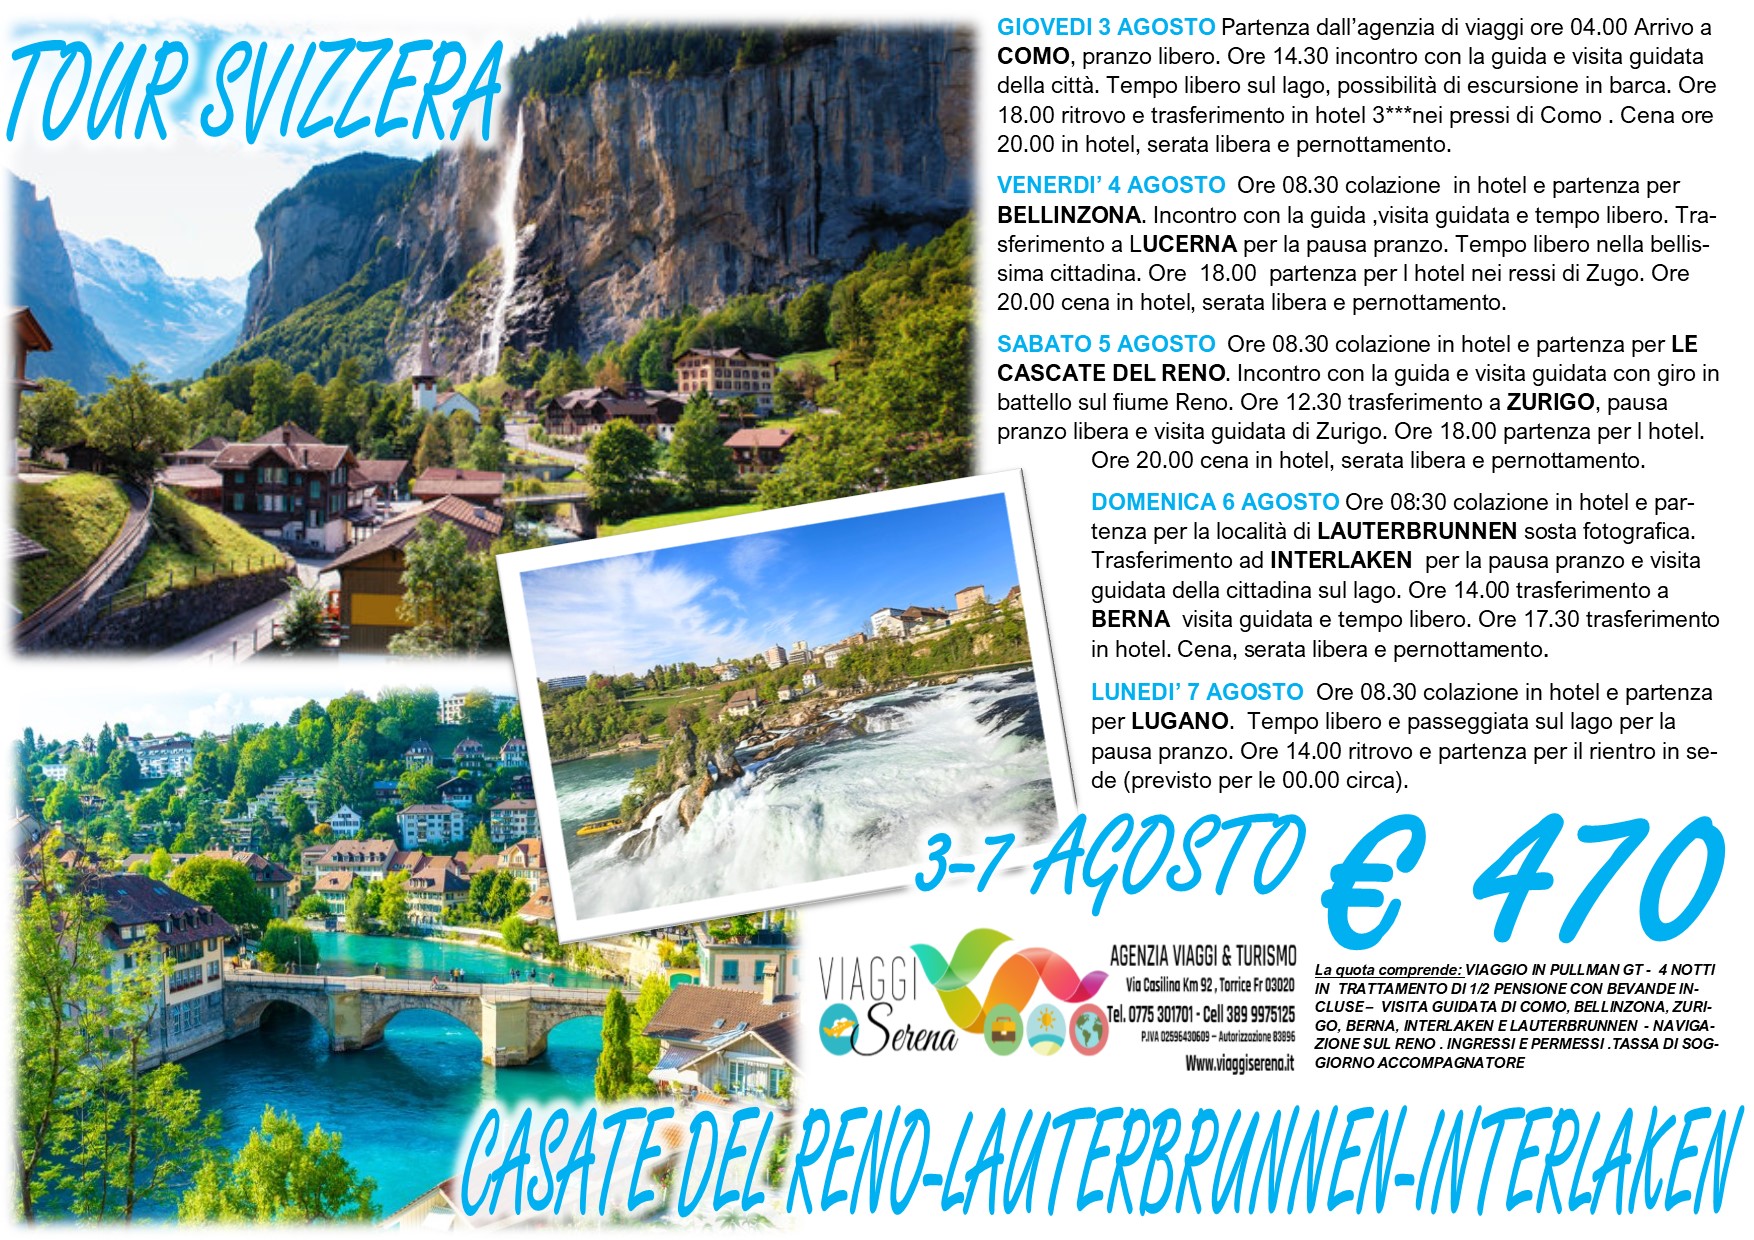 Viaggi di Gruppo: “Tour Svizzera” Lauterbrunnen, Interlaken, Cascate del Reno & Berna 3-7 Agosto €470,00